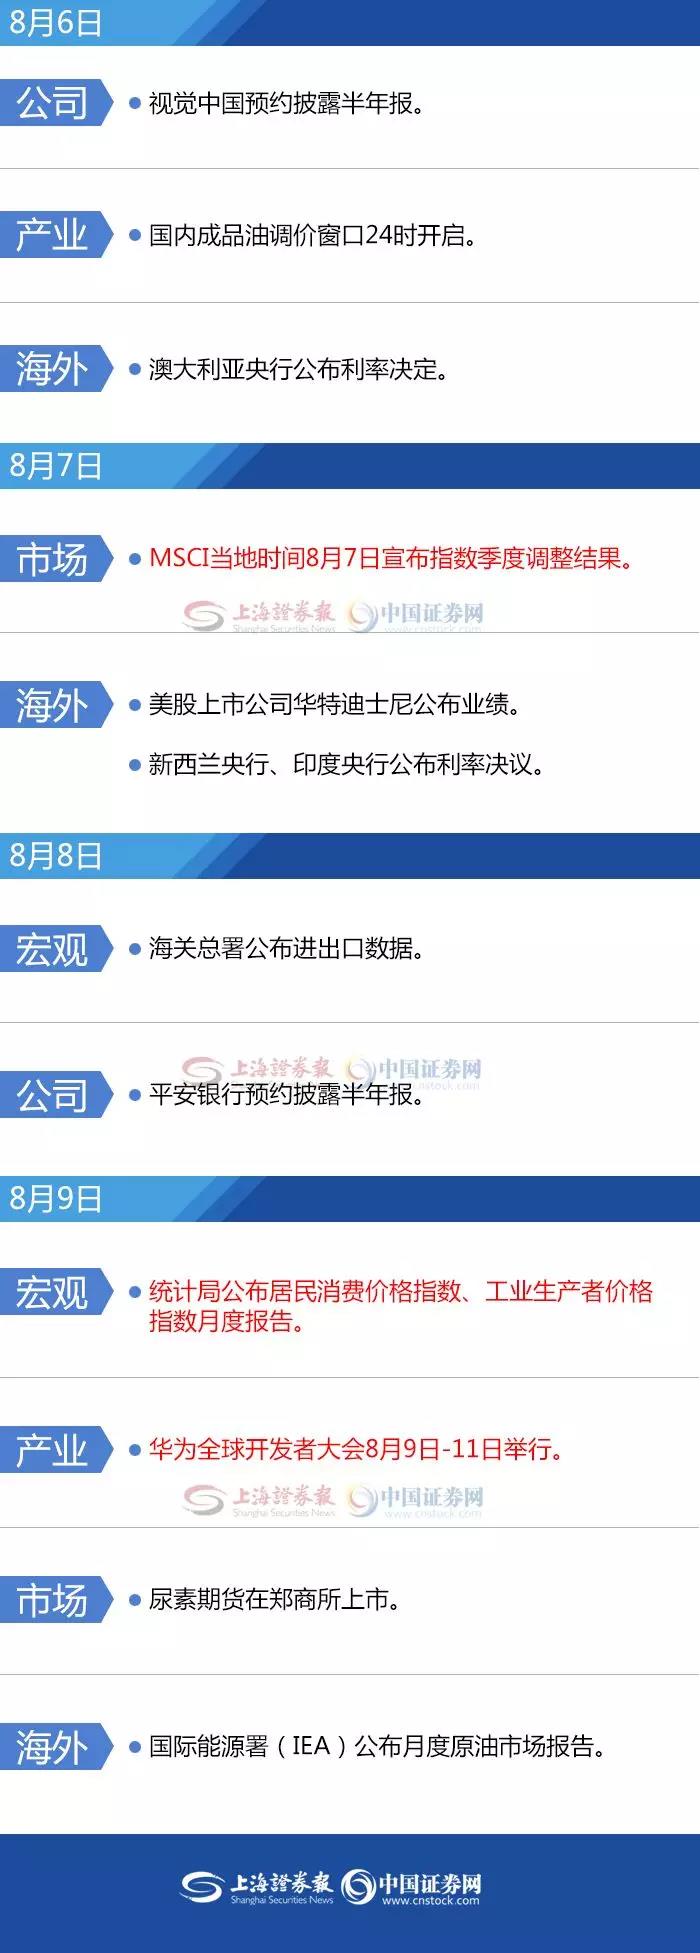 证券新闻 电竞菠菜外围app8月16日晚间重要公告集锦